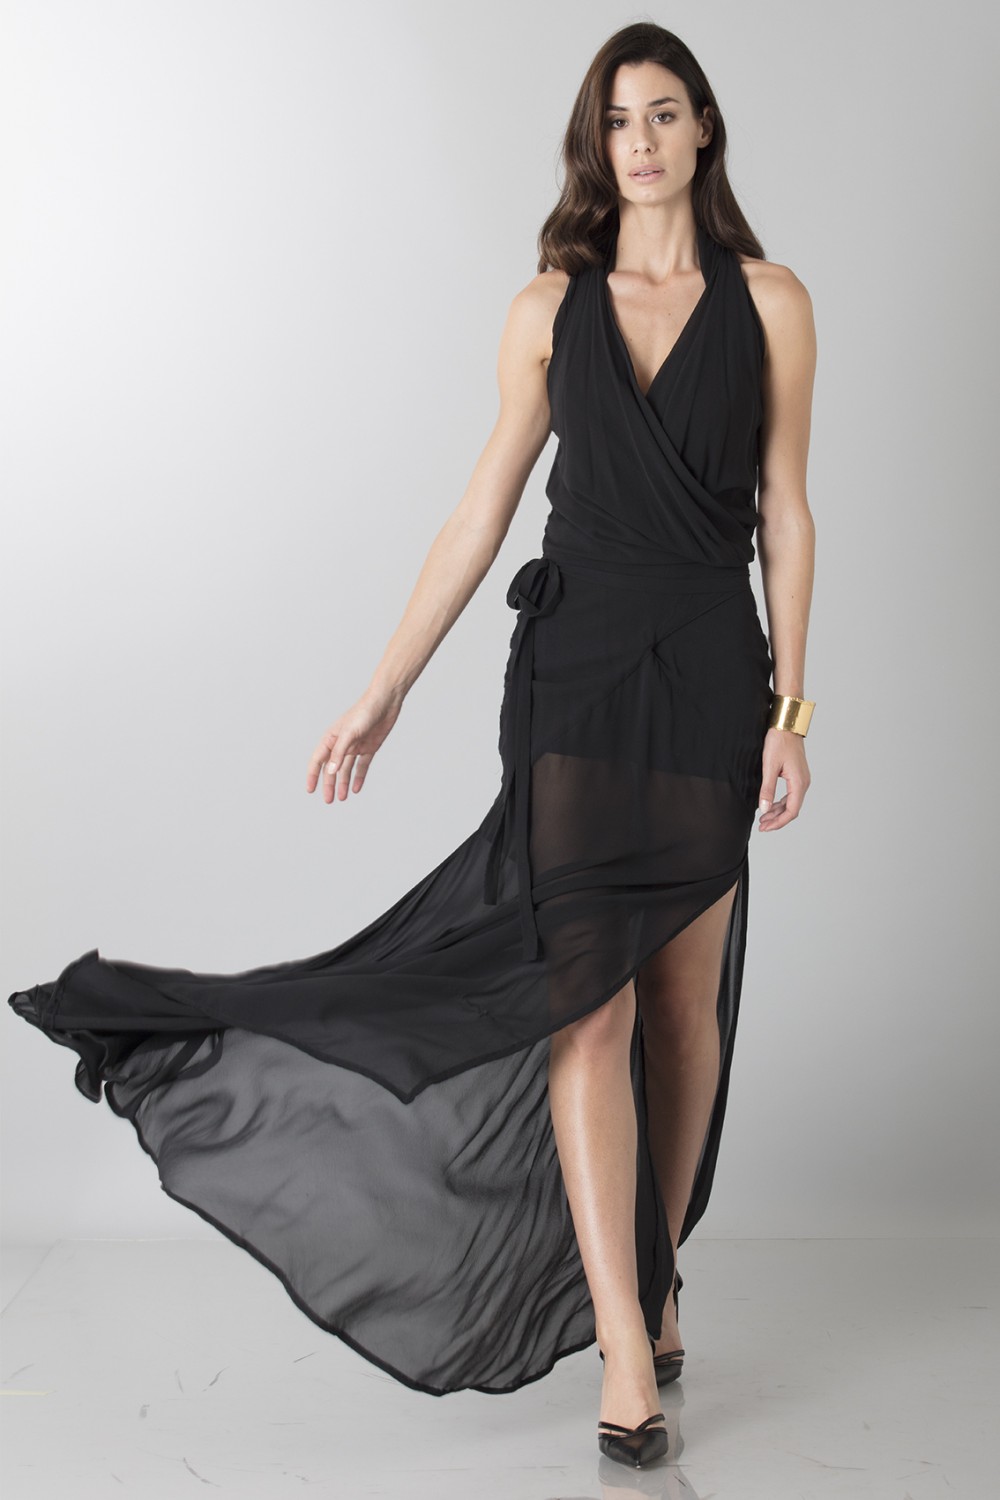 Vendita Abbigliamento Usato FIrmato - Abito nero con trasparenze - Vivienne Westwood - Drexcode -7